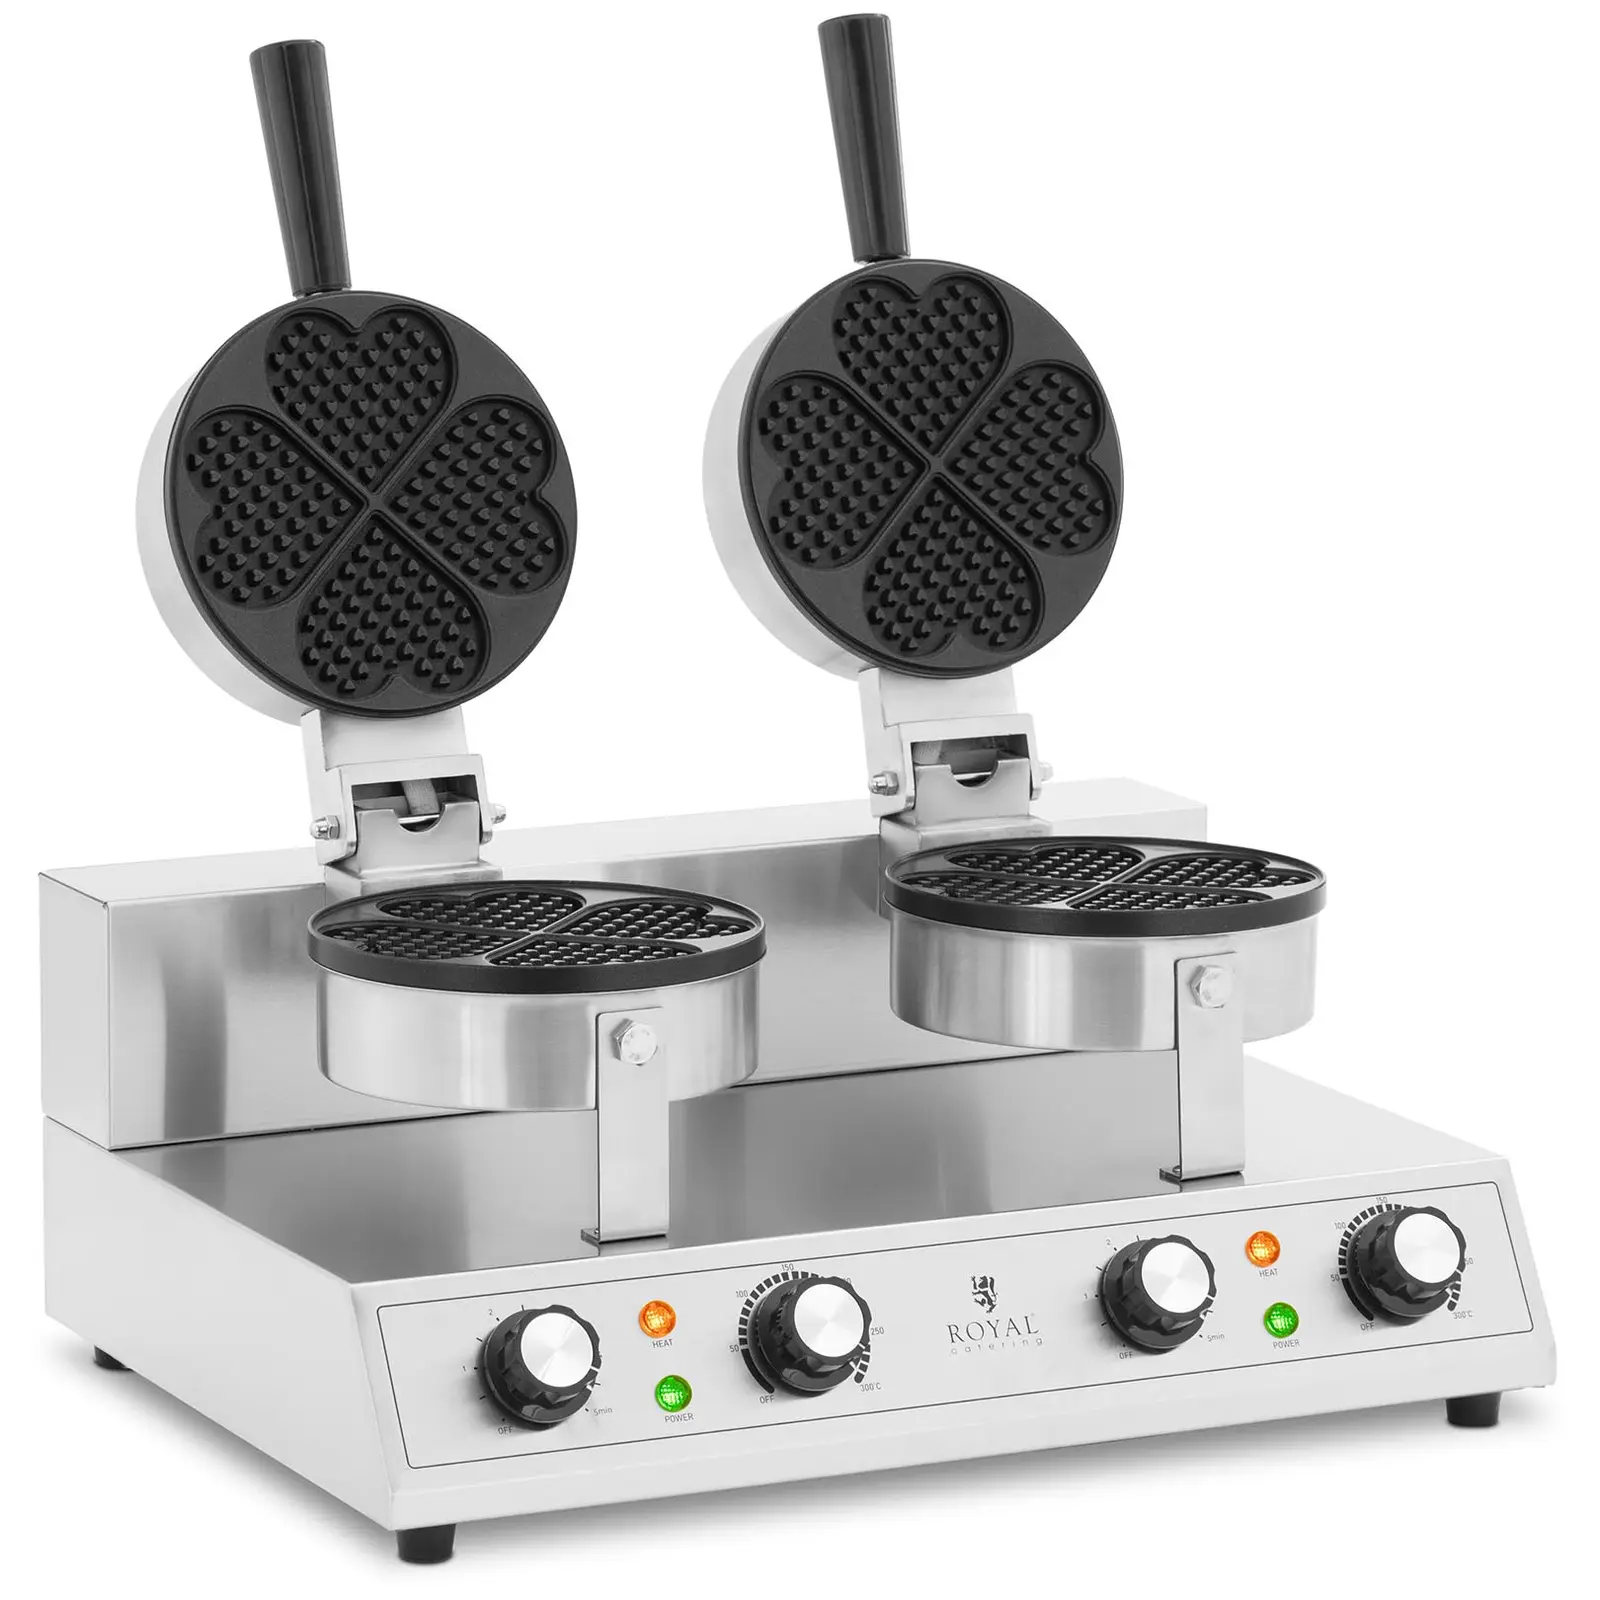 Máquina de waffles dupla - forma de coração - 2 x 1000 W - temporizador - espessura das waffles 10 mm - Royal Catering